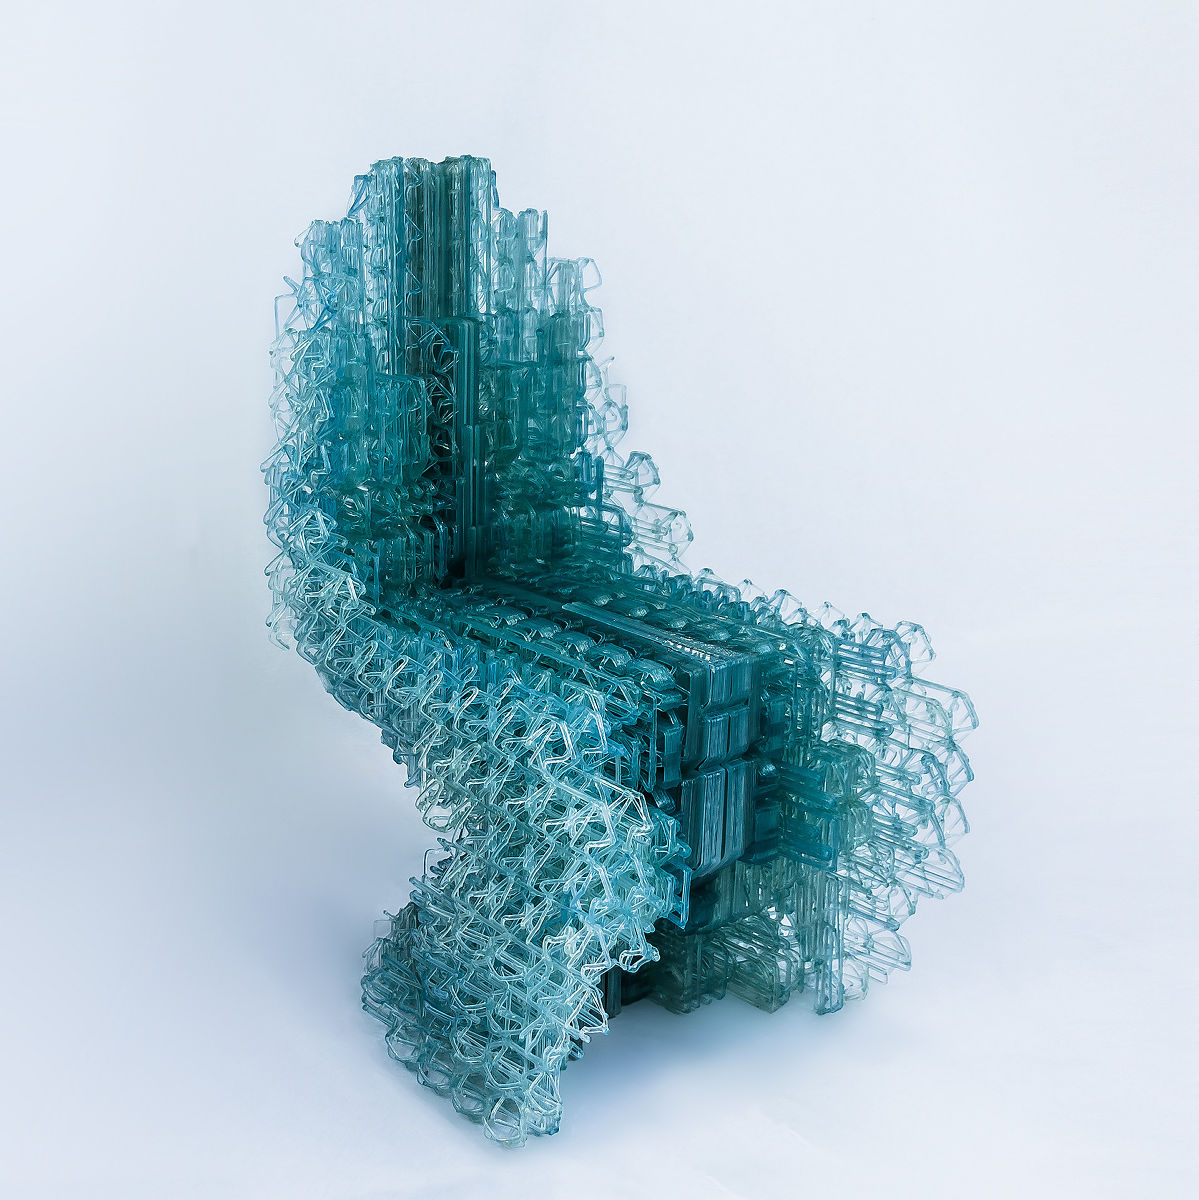 3dプリンターで素材の強度や柔らかさまでデザインしたイス Voxel Chair が登場 Gigazine